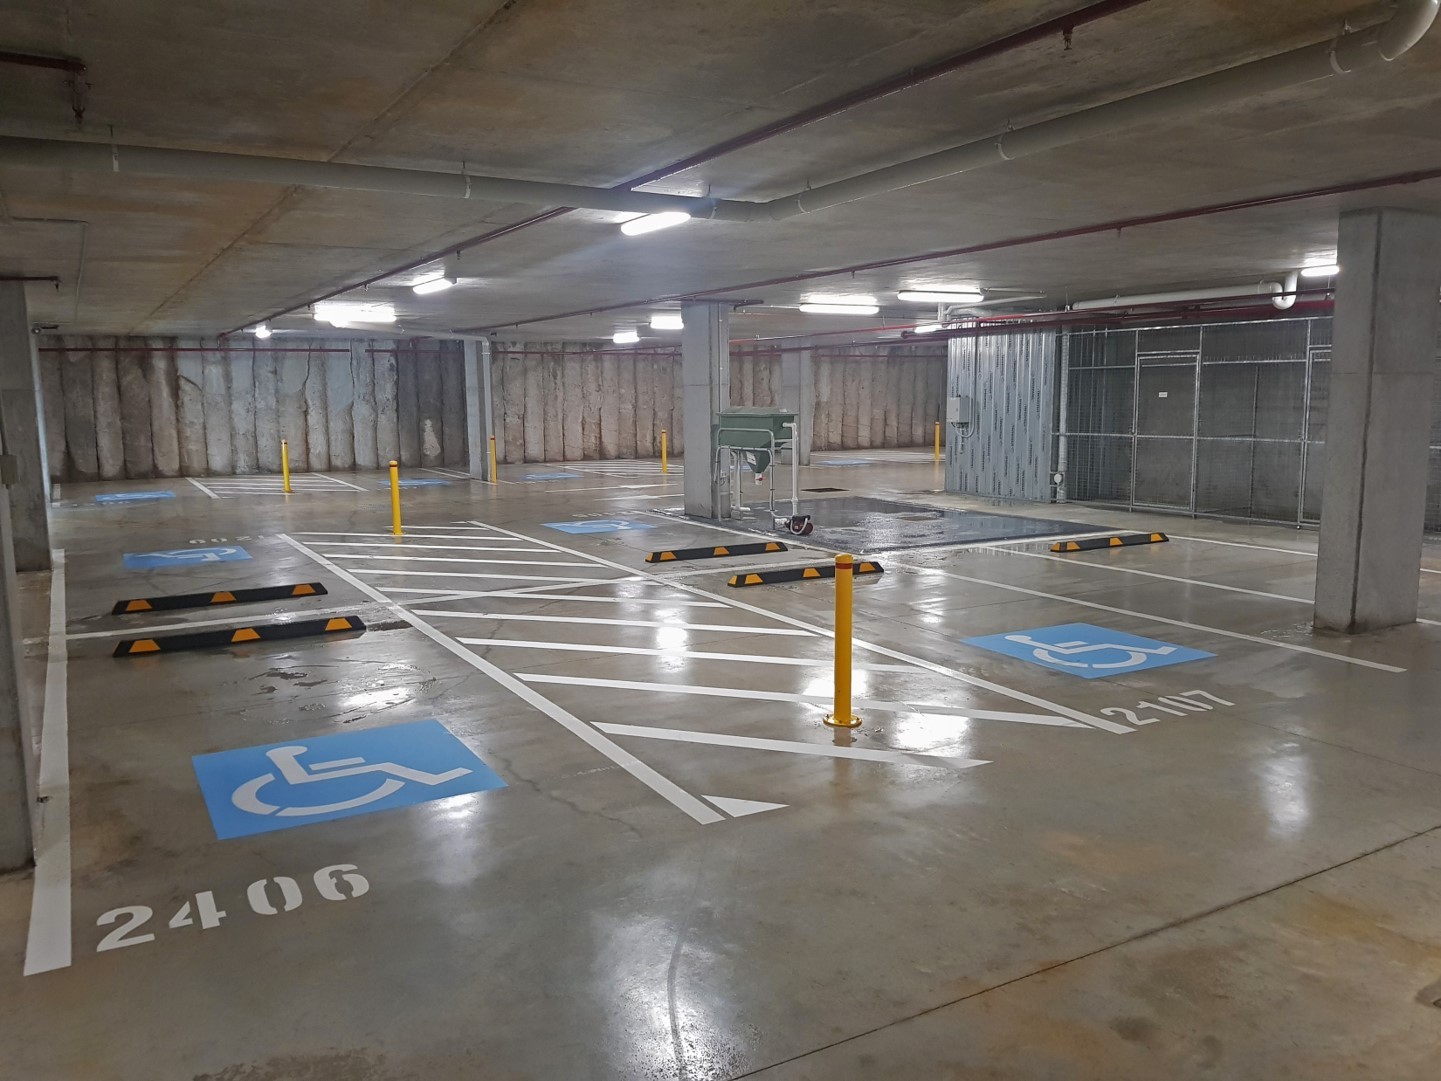 Sydney Epoxy Flooring - Carpark Line Marking and Epoxy Floor coating